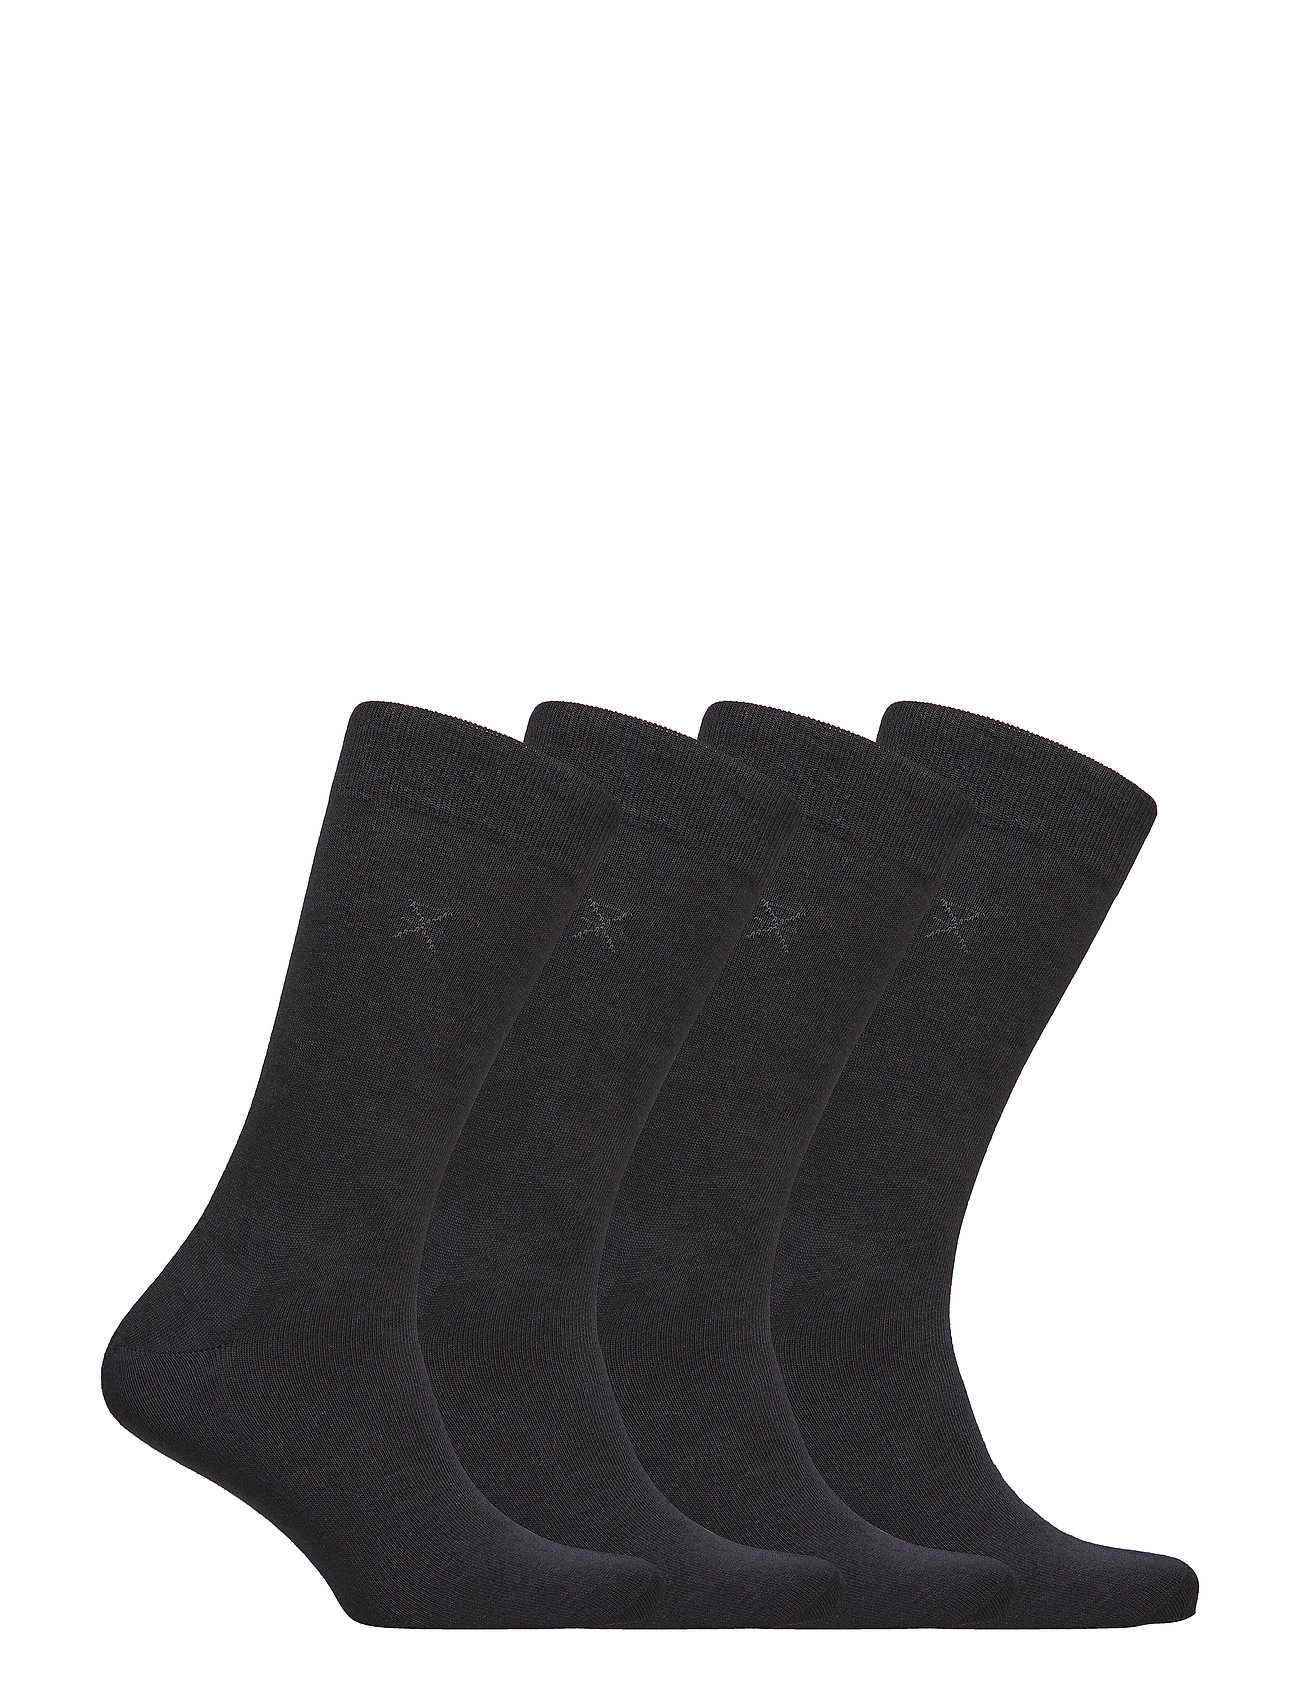 JBS of Denmark - JBS of dk socks cotton 4-pack - black - 1